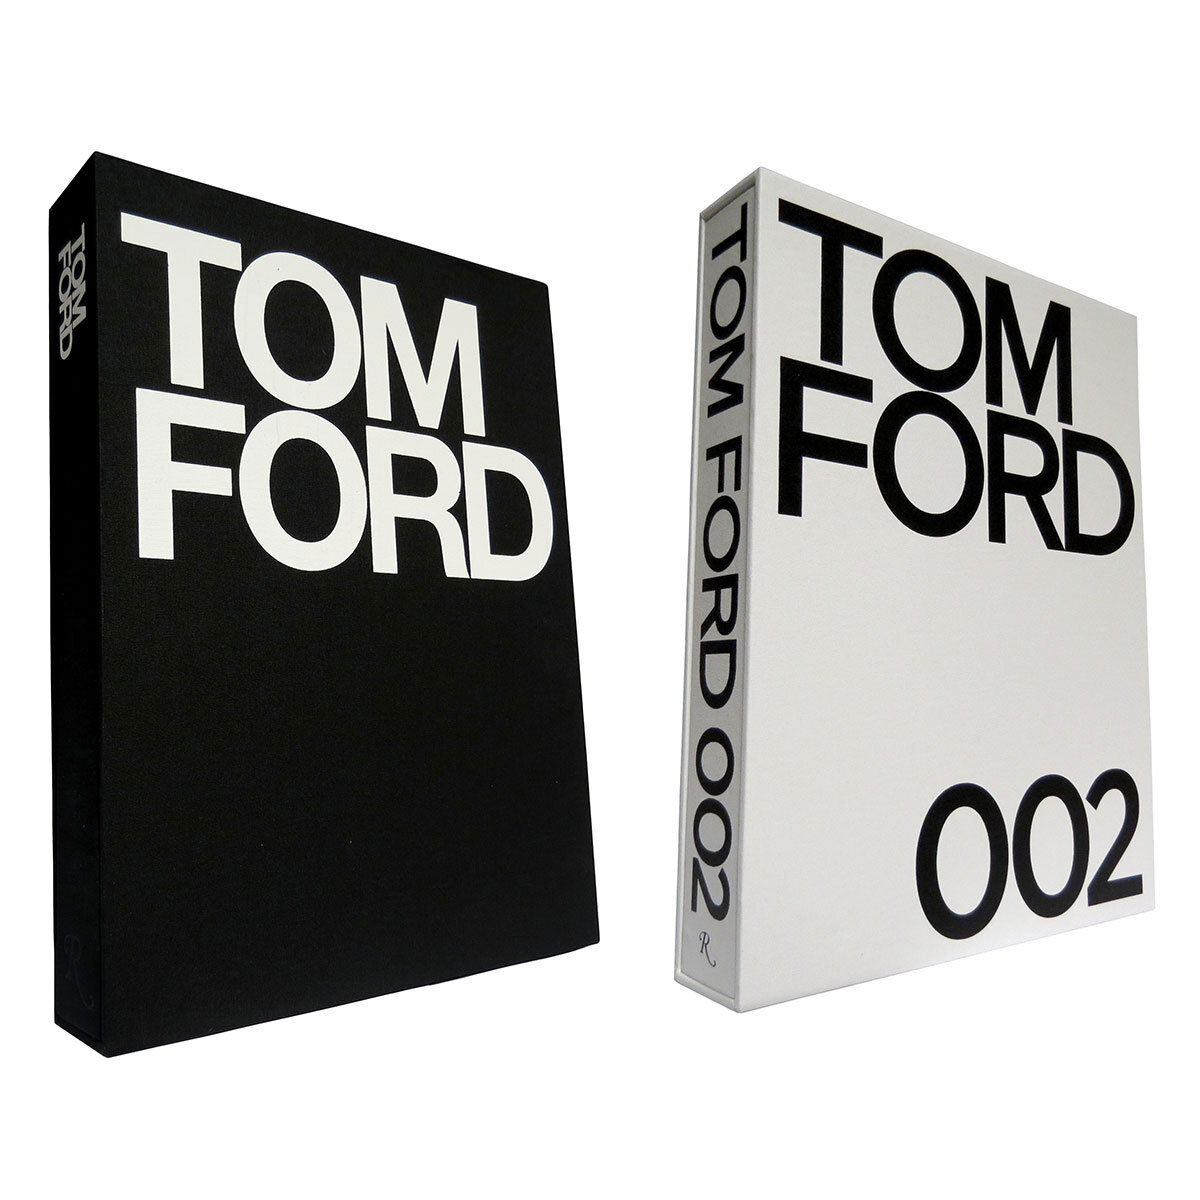 Tom Ford Assortment | Costco UK